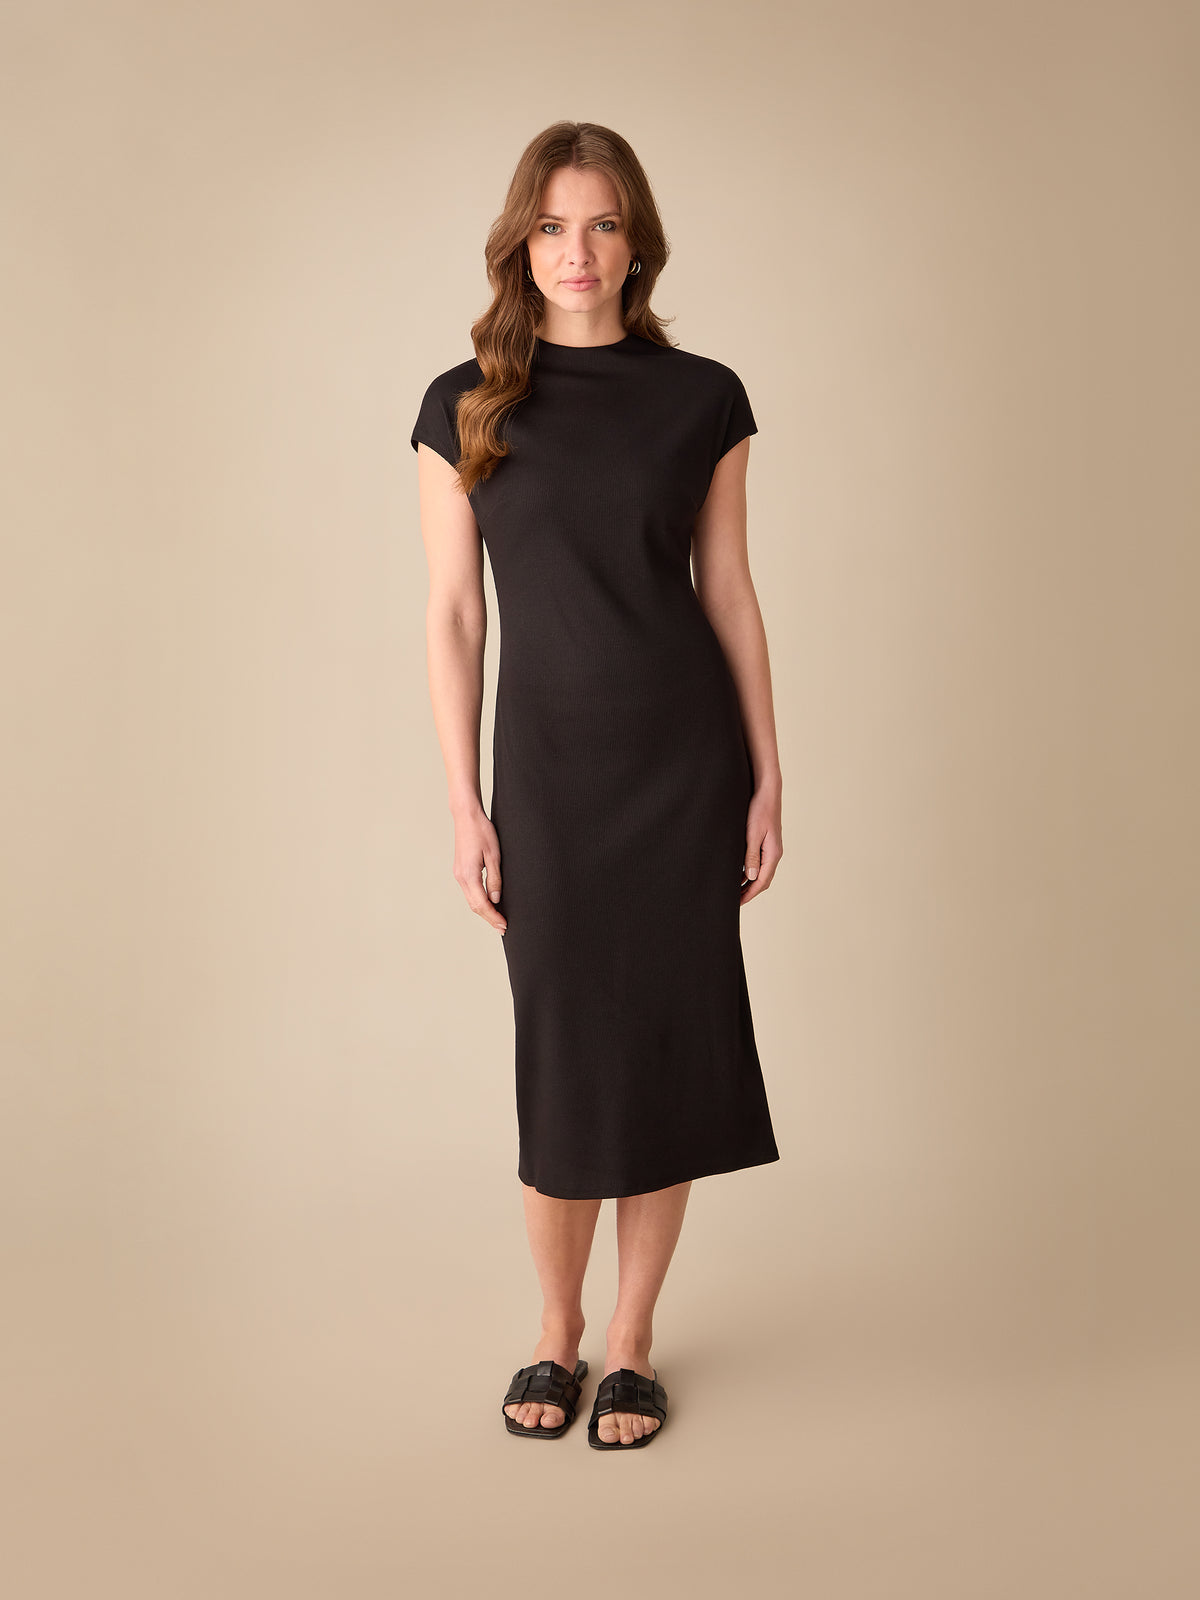 Petite Black Rib Knit Midi Dress